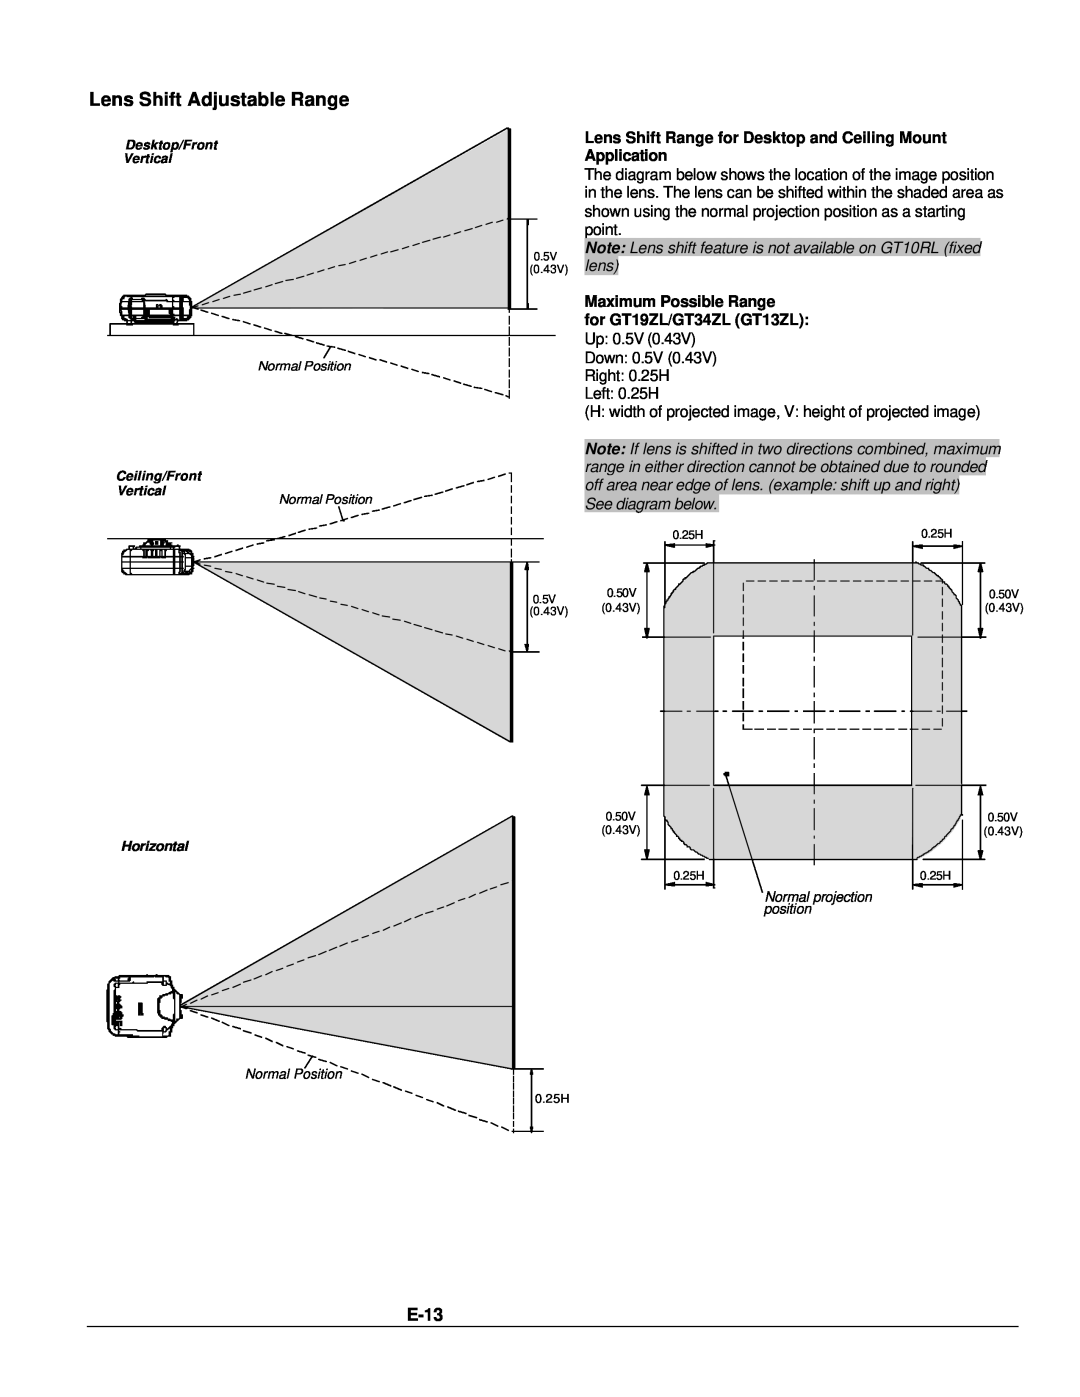 NEC GT1150 user manual Lens Shift Adjustable Range, E-13, Lens Shift Range for Desktop and Ceiling Mount Application 